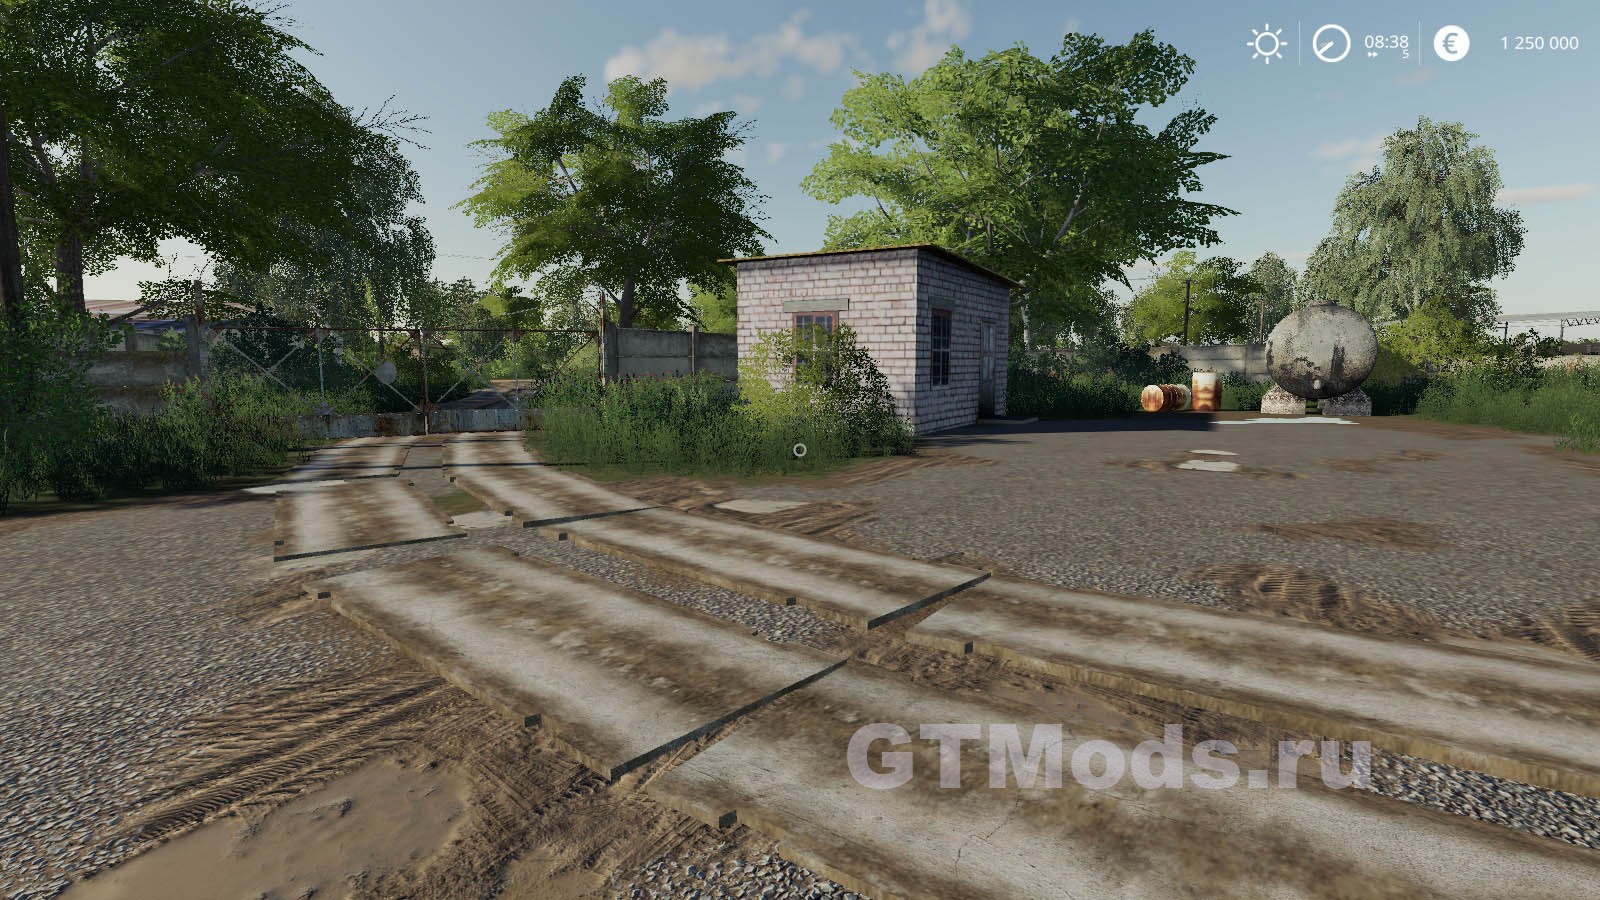 Карта СОВХОЗ РАССВЕТ New v1.0.1.4 для Farming Simulator 19 (1.7.x) » Модыдля игр про автомобили от GTMods.ru